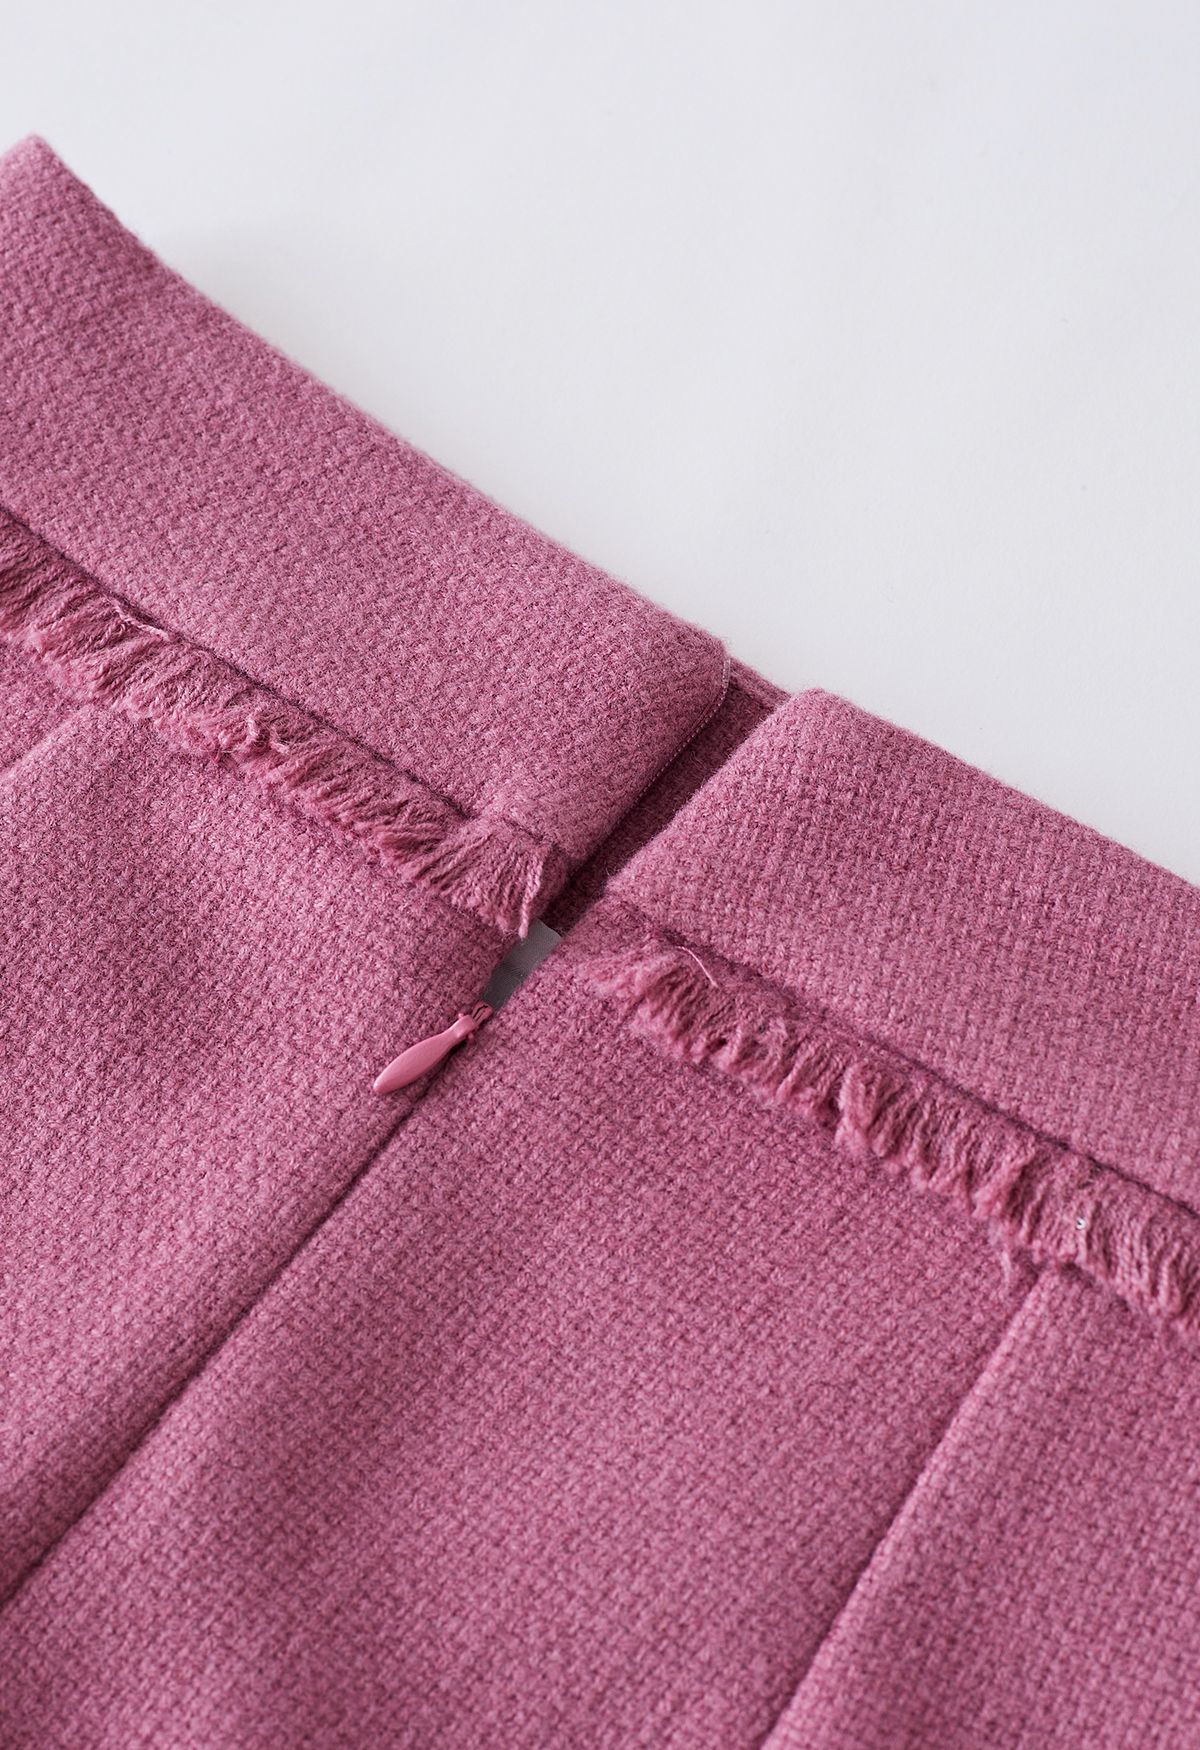 Minifalda de tweed con ribete de flecos en rosa